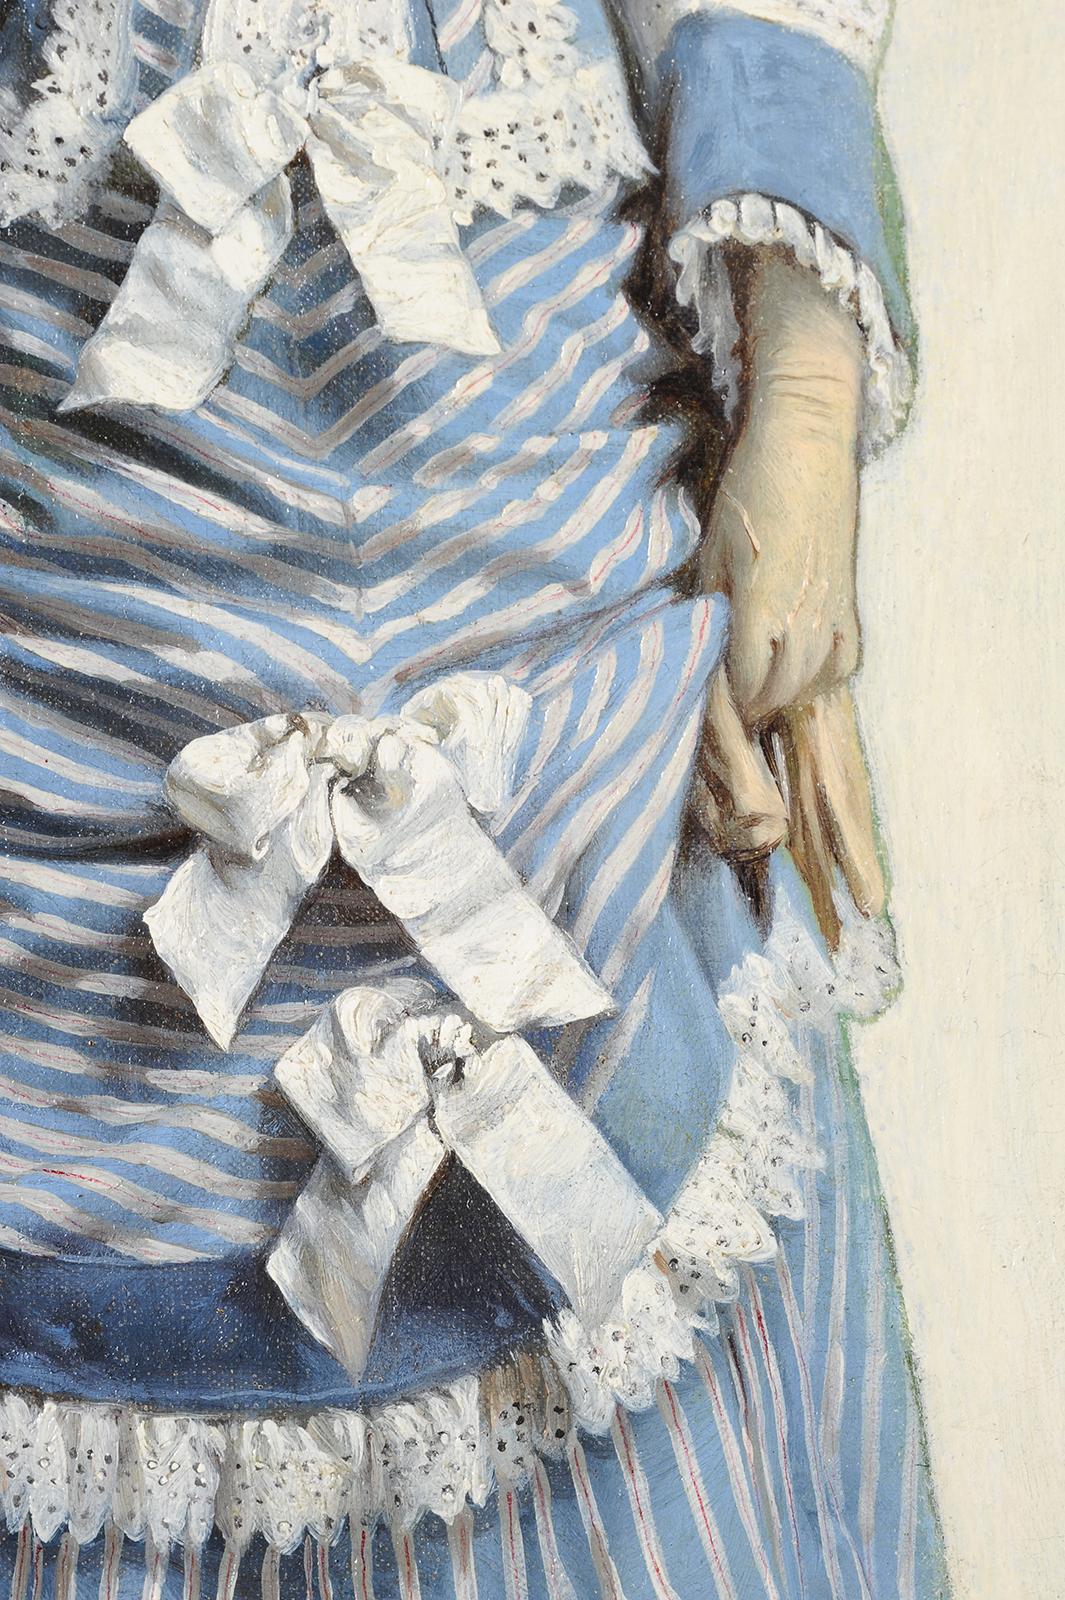 Charles LOYEUX
(Paris 1823 - Arnouville 1899)
Élégante en promenade
Oil on canvas
H. 46 cm; L. 27.5 cm
Signed lower left

As a pupil of Paul Delaroche, the young Charles Loyeux befriended several painters of his generation, including Jean-Léon